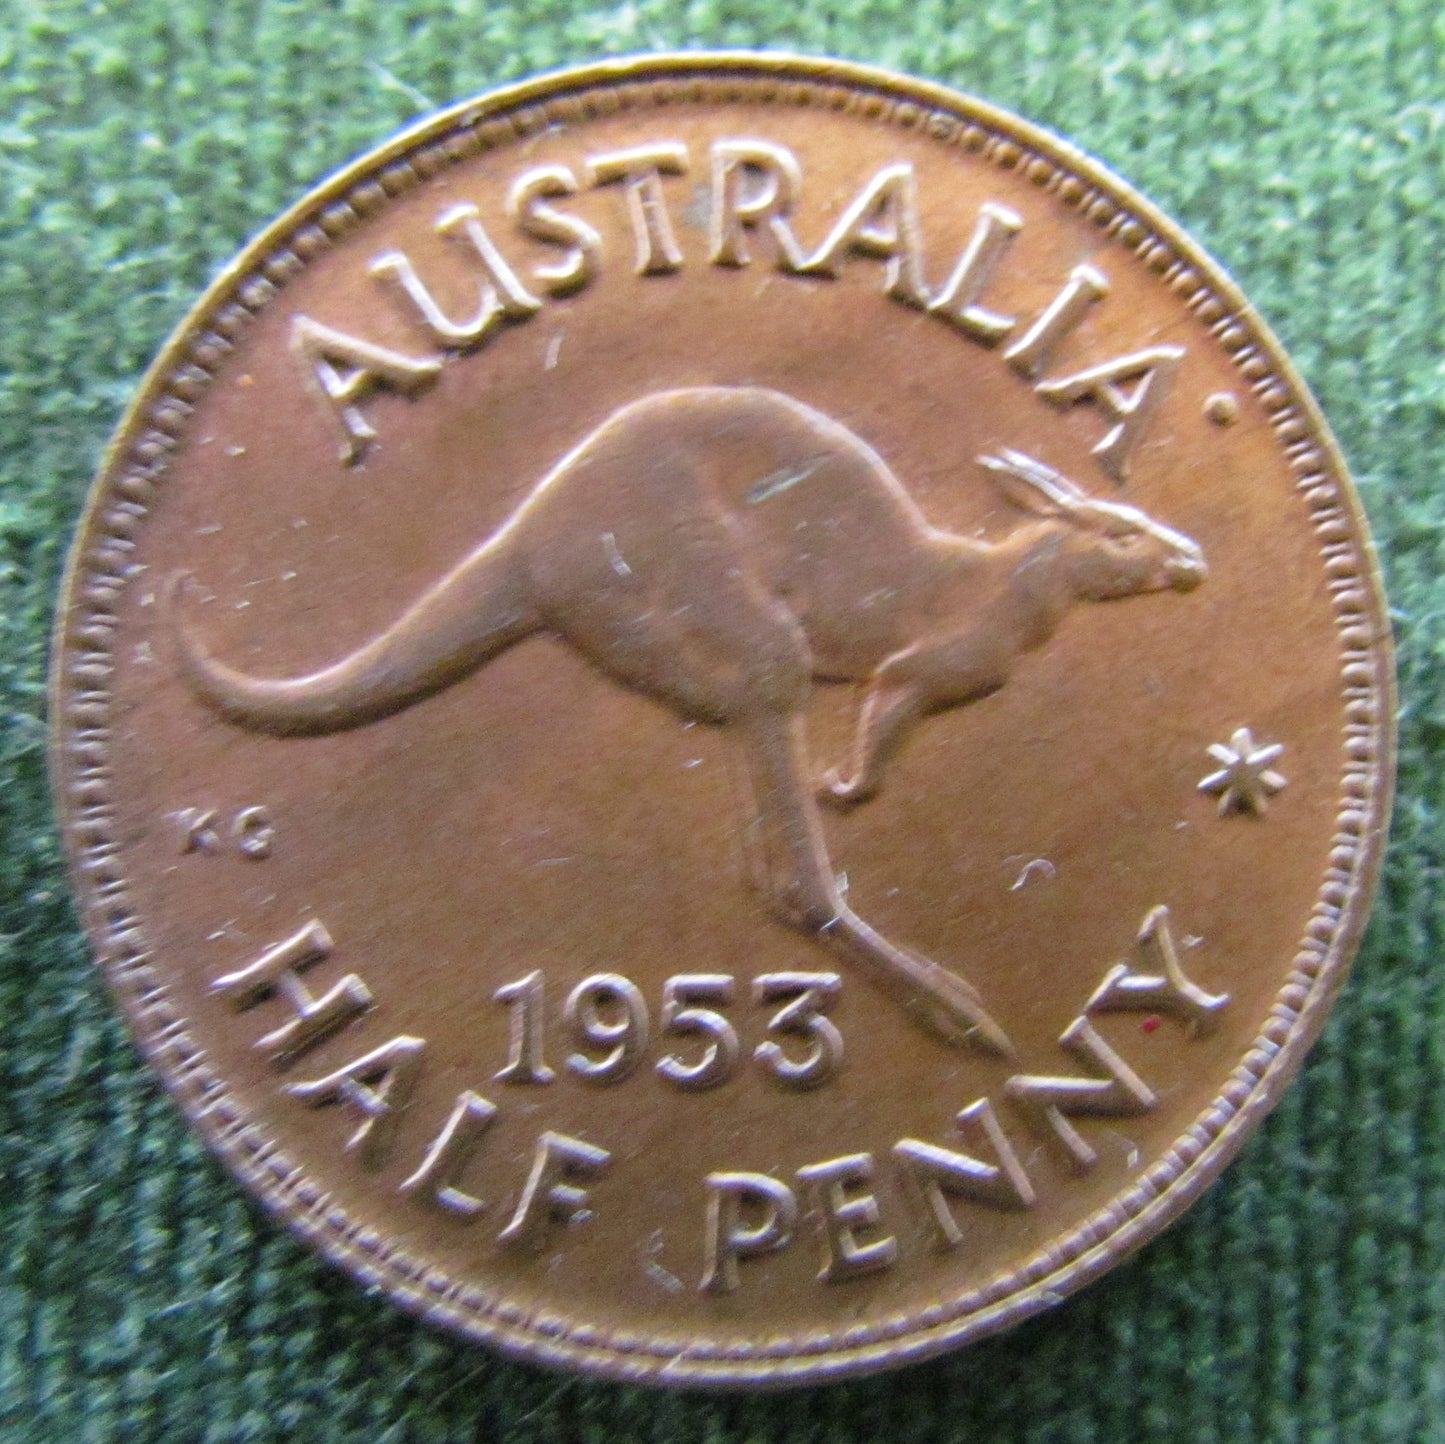 Australian 1953 1/2d Half Penny Queen Elizabeth II Coin - High Grade